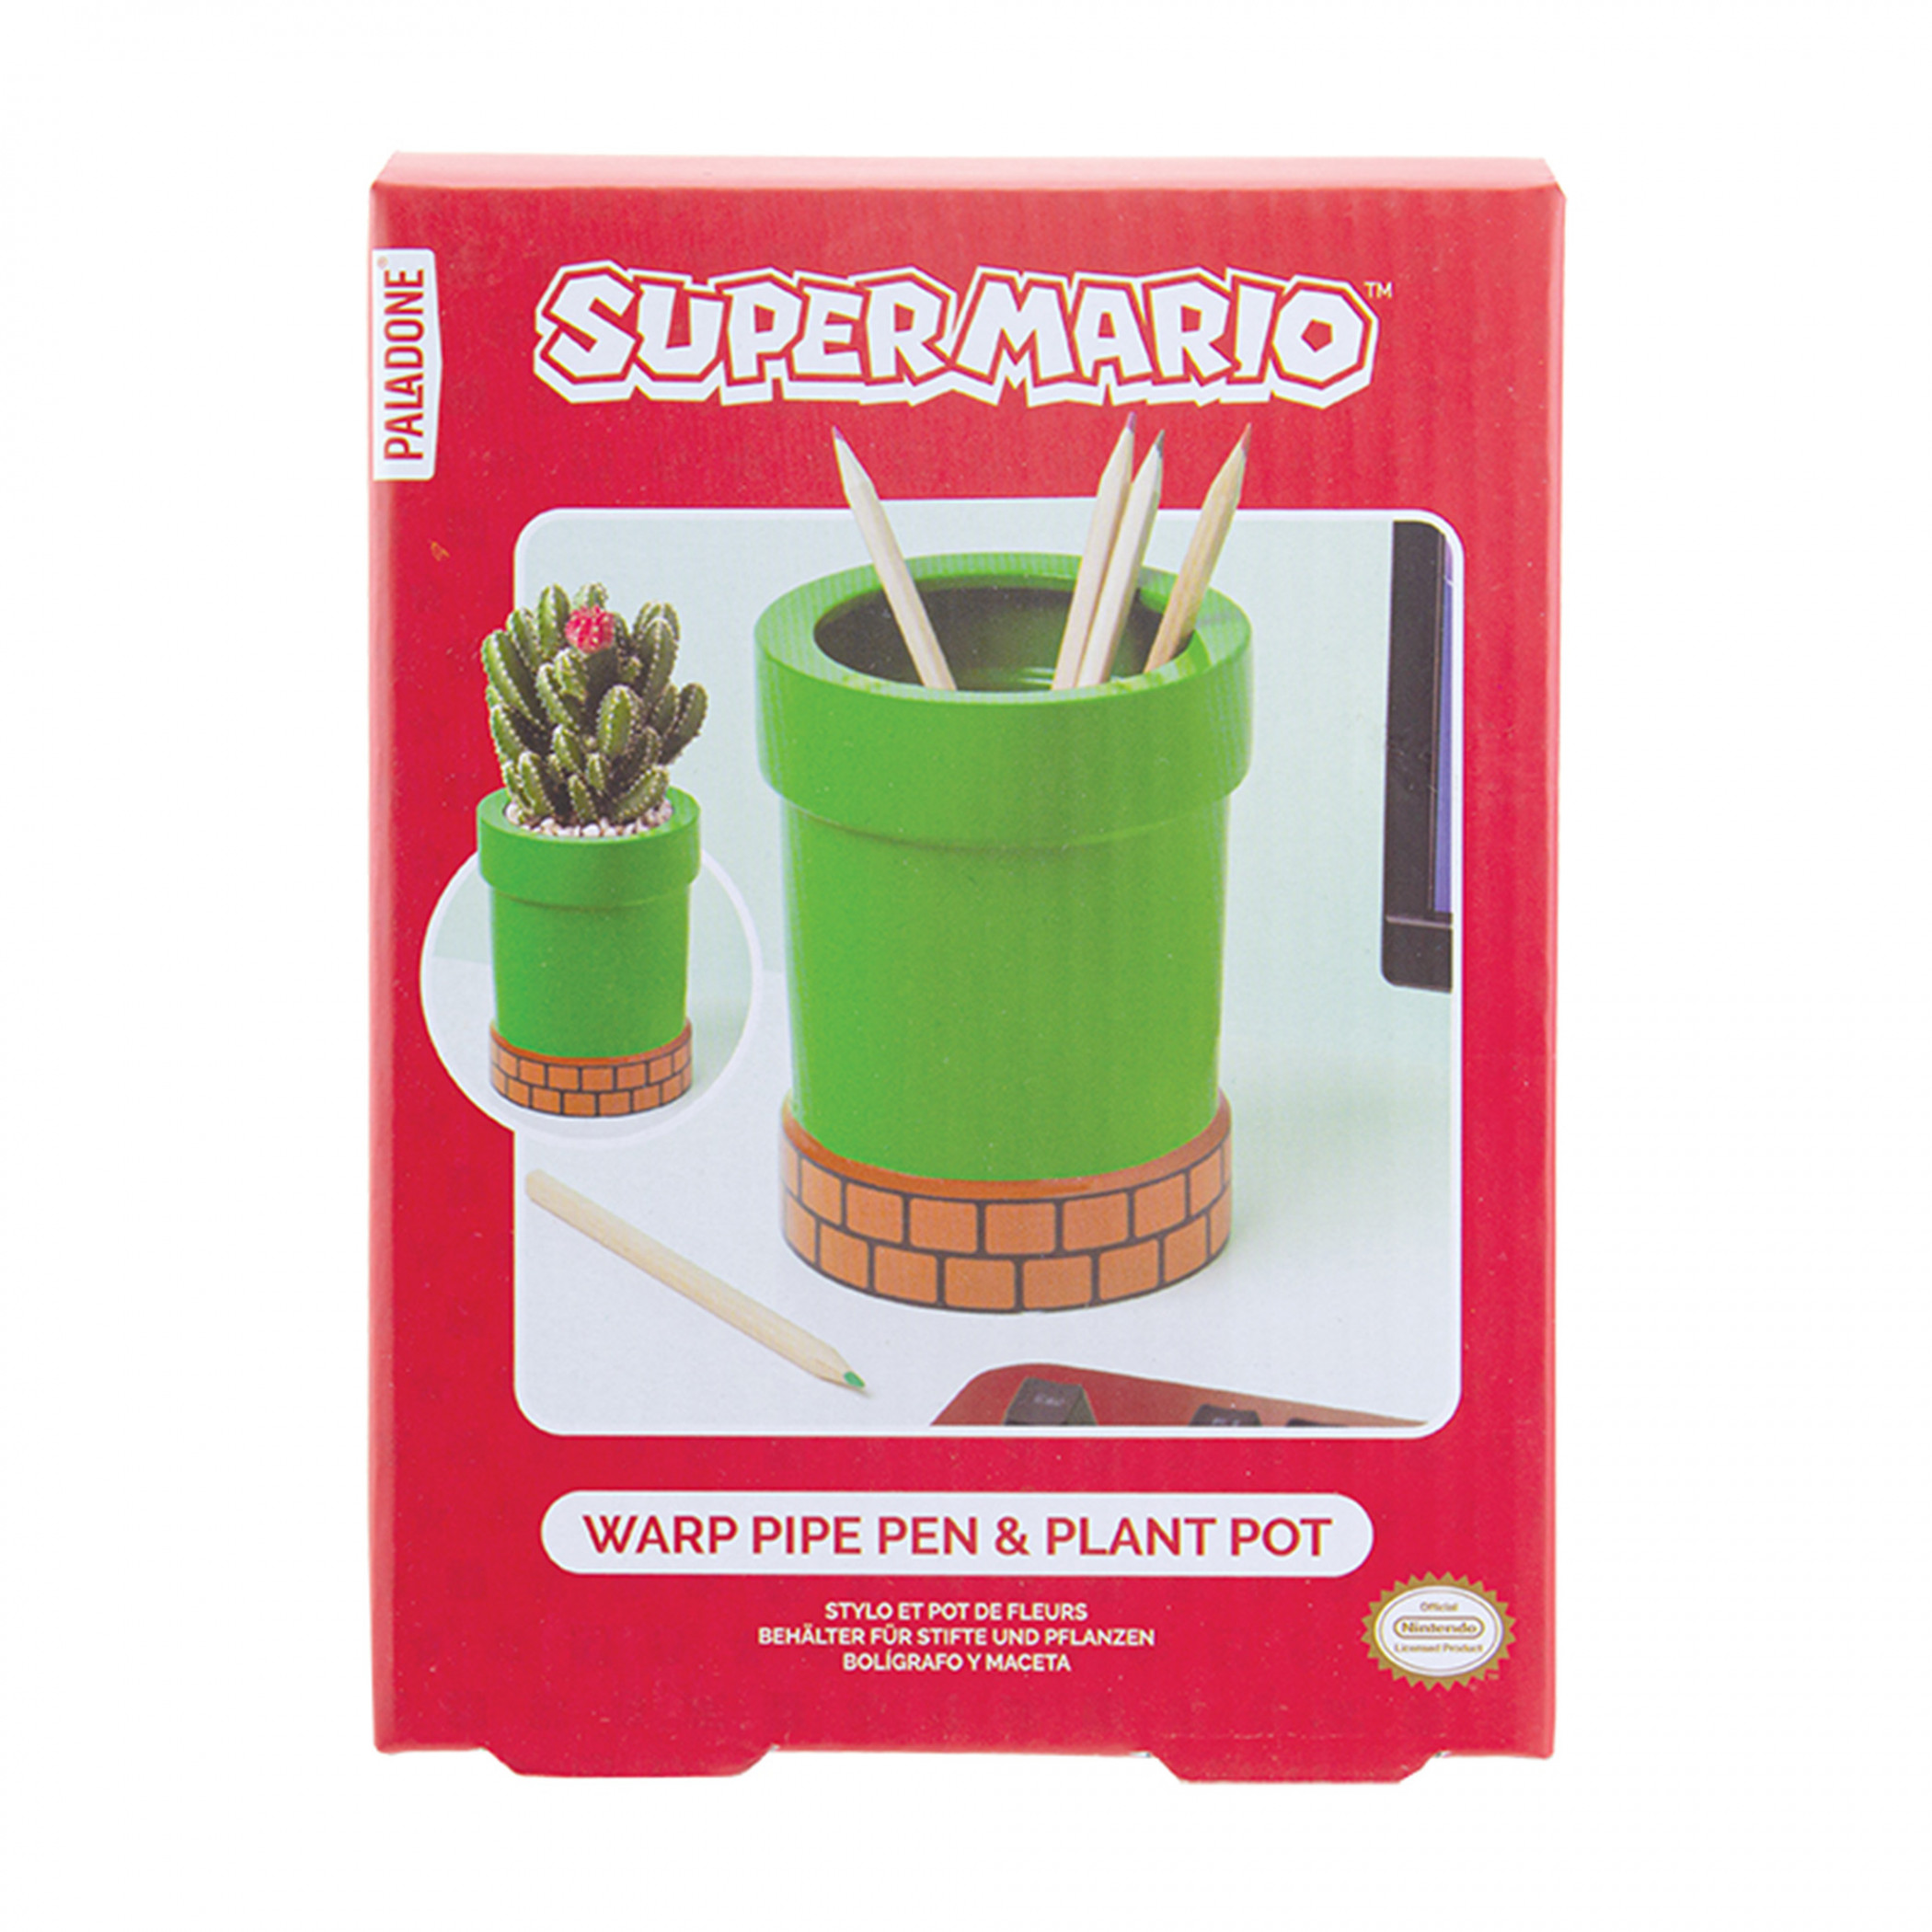 Super Mario Pipe Ceramic Pencil Holder and Plant Pot